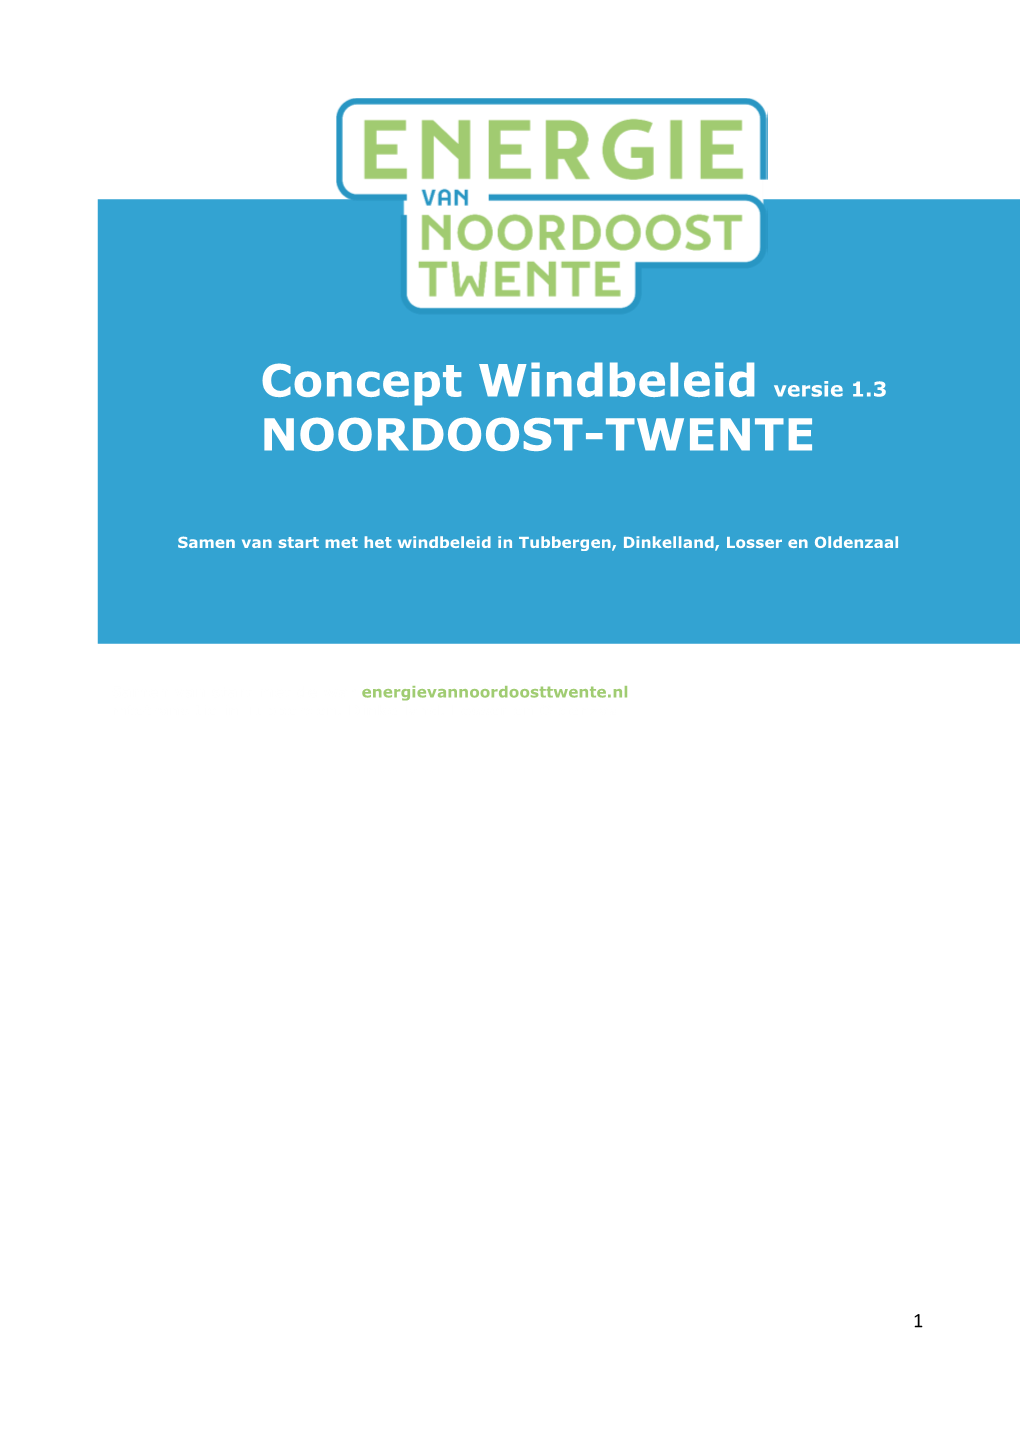 Concept Windbeleid Versie 1.3 NOORDOOST-TWENTE